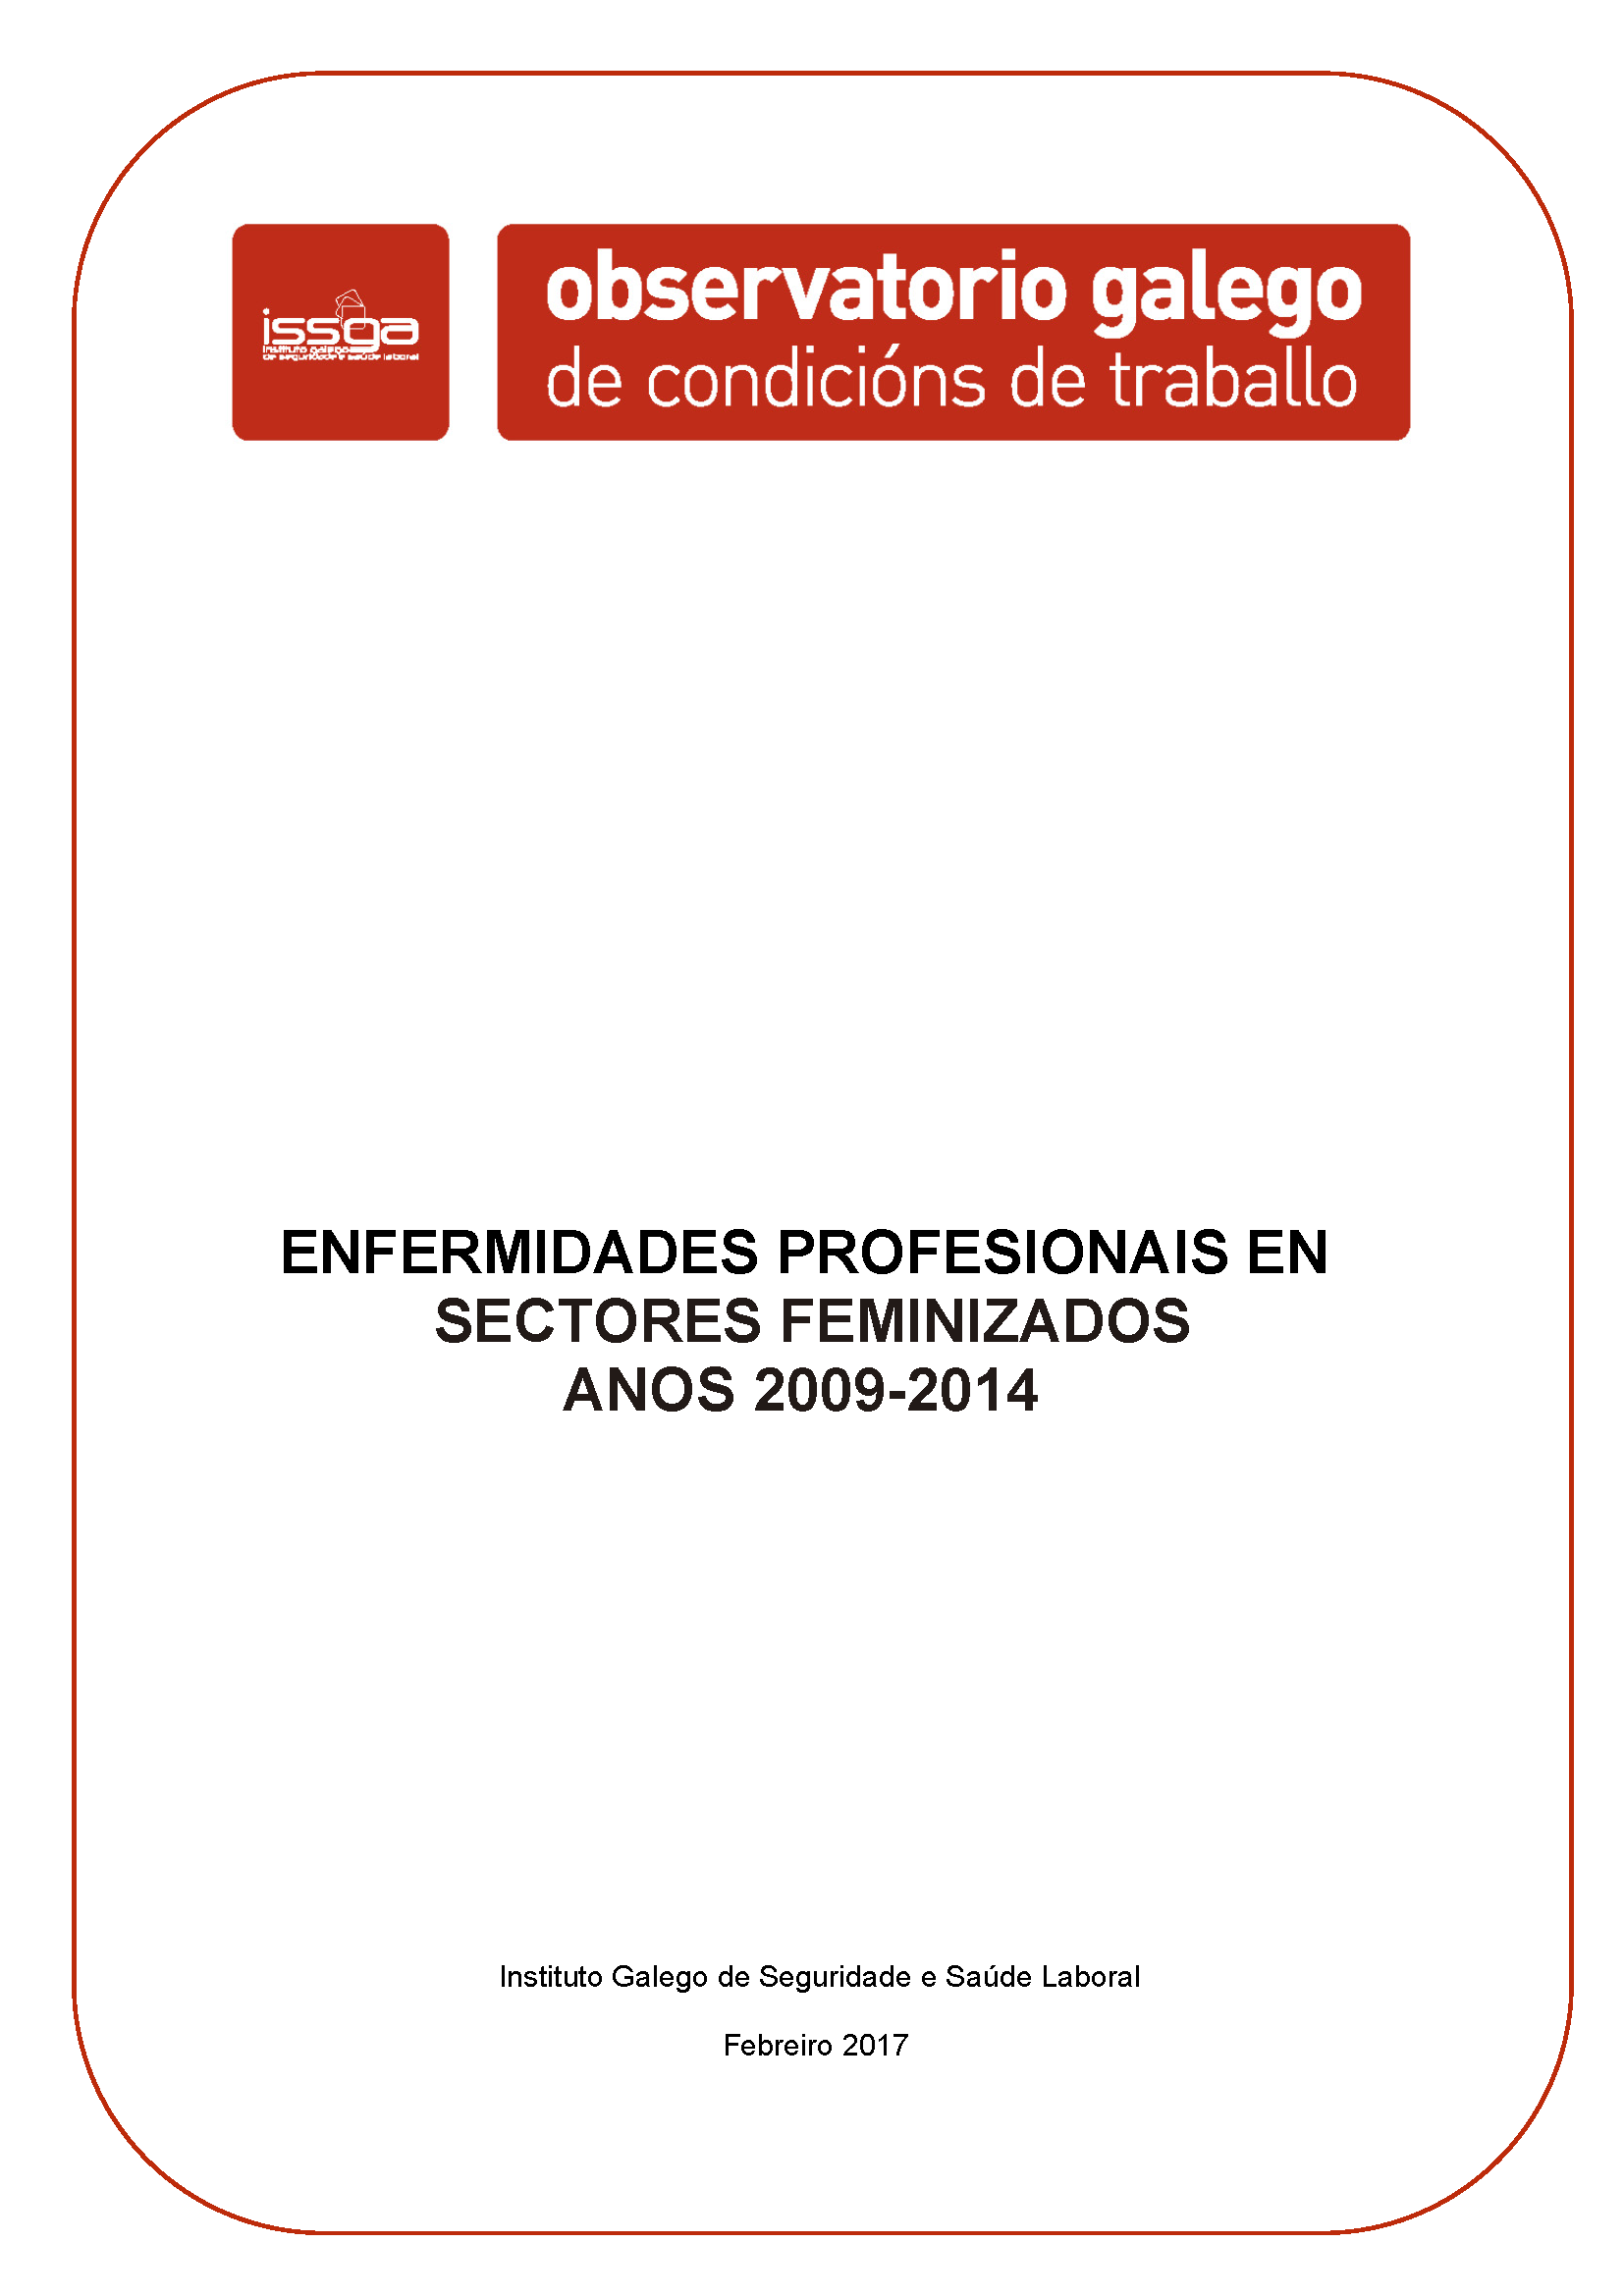 Enfermedades profesionales en sectores feminizados años 2009-2014